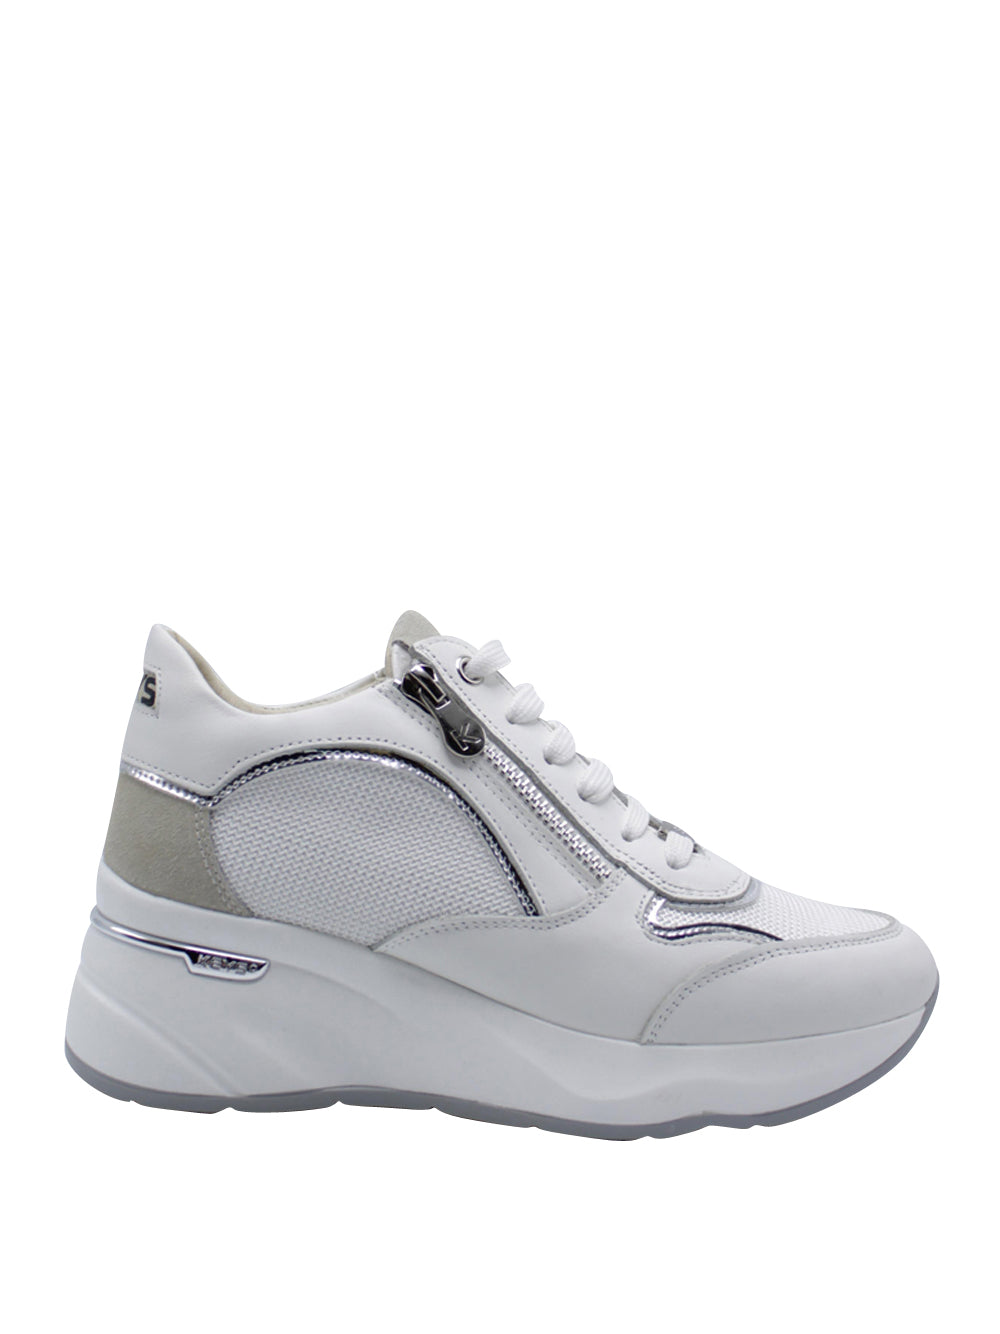 KEY'S Sneakers con zeppa Donna - Bianco modello 9041